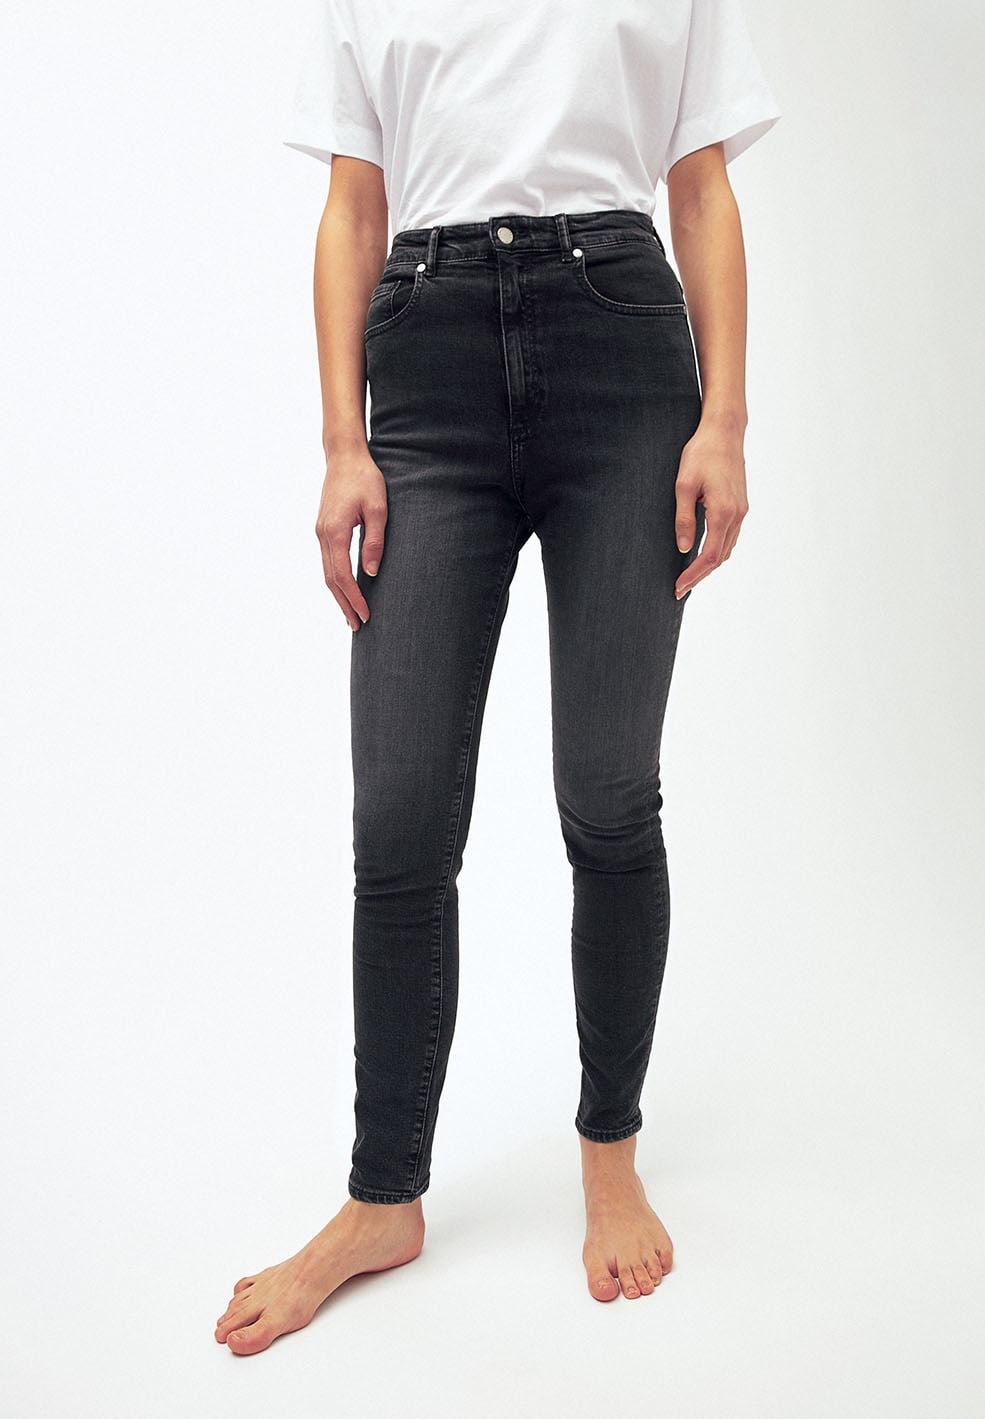 Jeans INGAA in grey wash von ARMEDANGELS günstig online kaufen